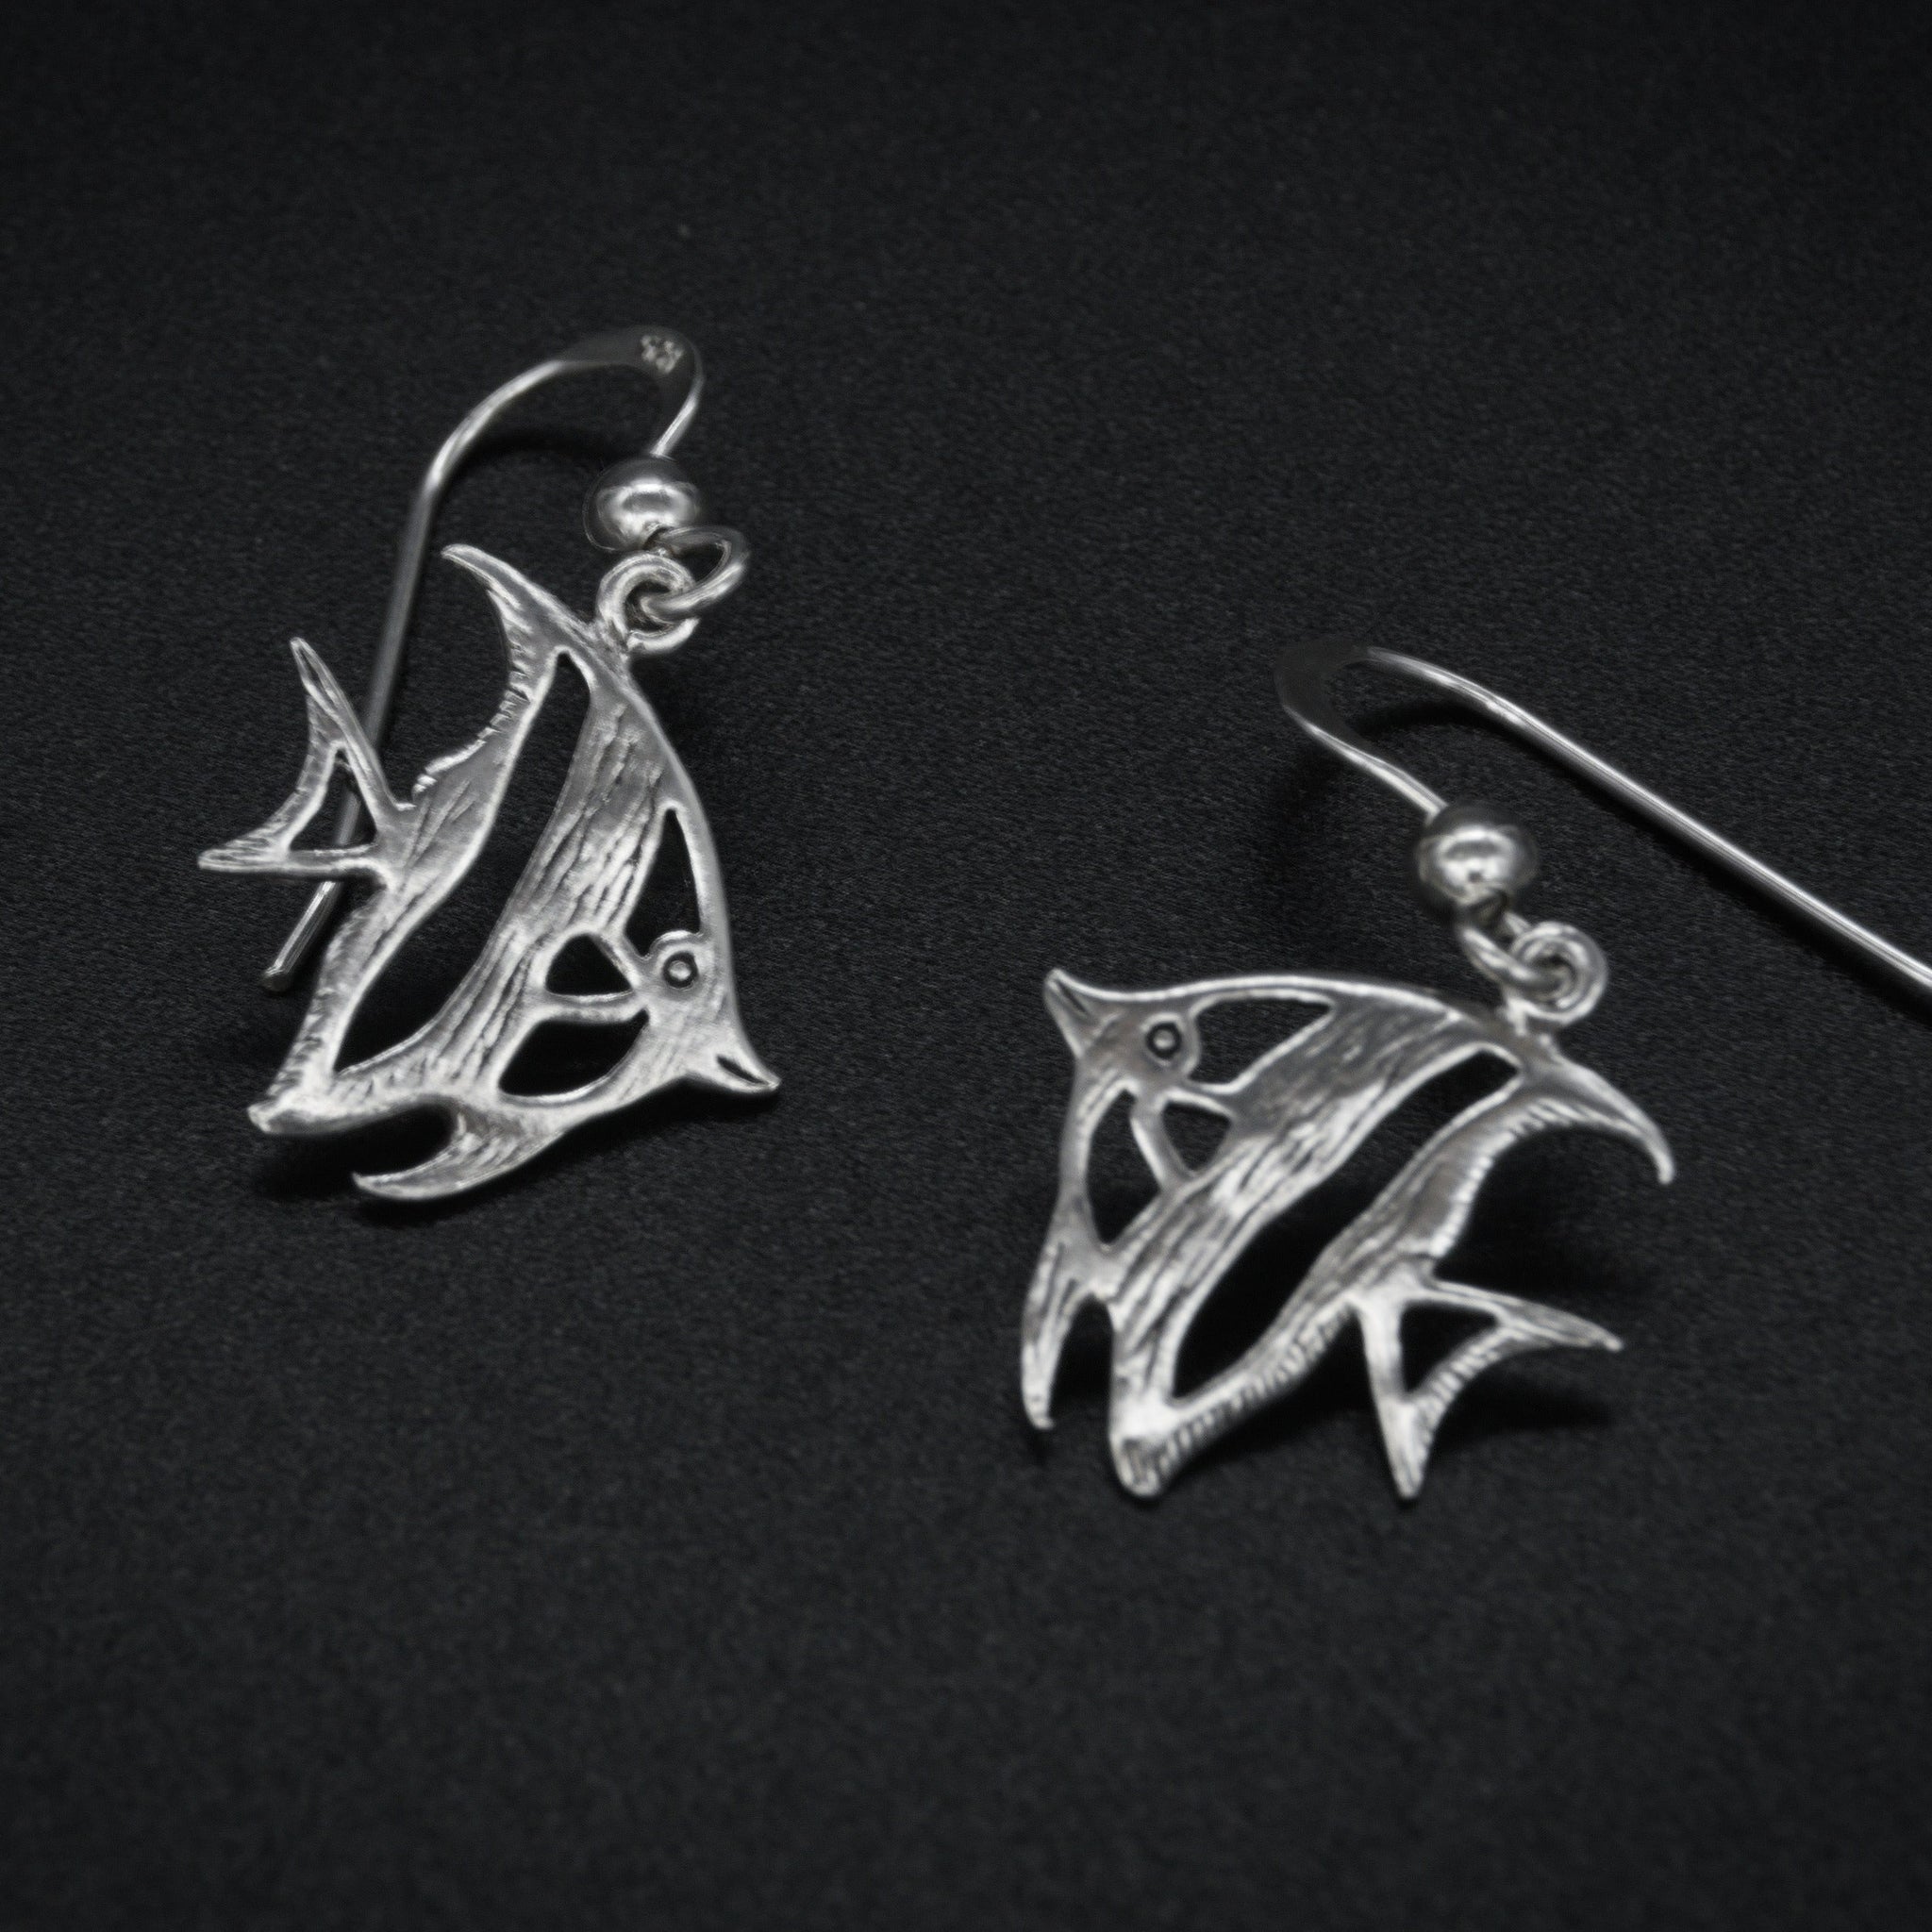 3D Koi Fish Earrings, Sterling Silver Ear Wires, Oriental Japanese Animal  Jewelry, Dainty Drop Dangle Earrings, Japan Charm Cute Earrings - Etsy  Denmark